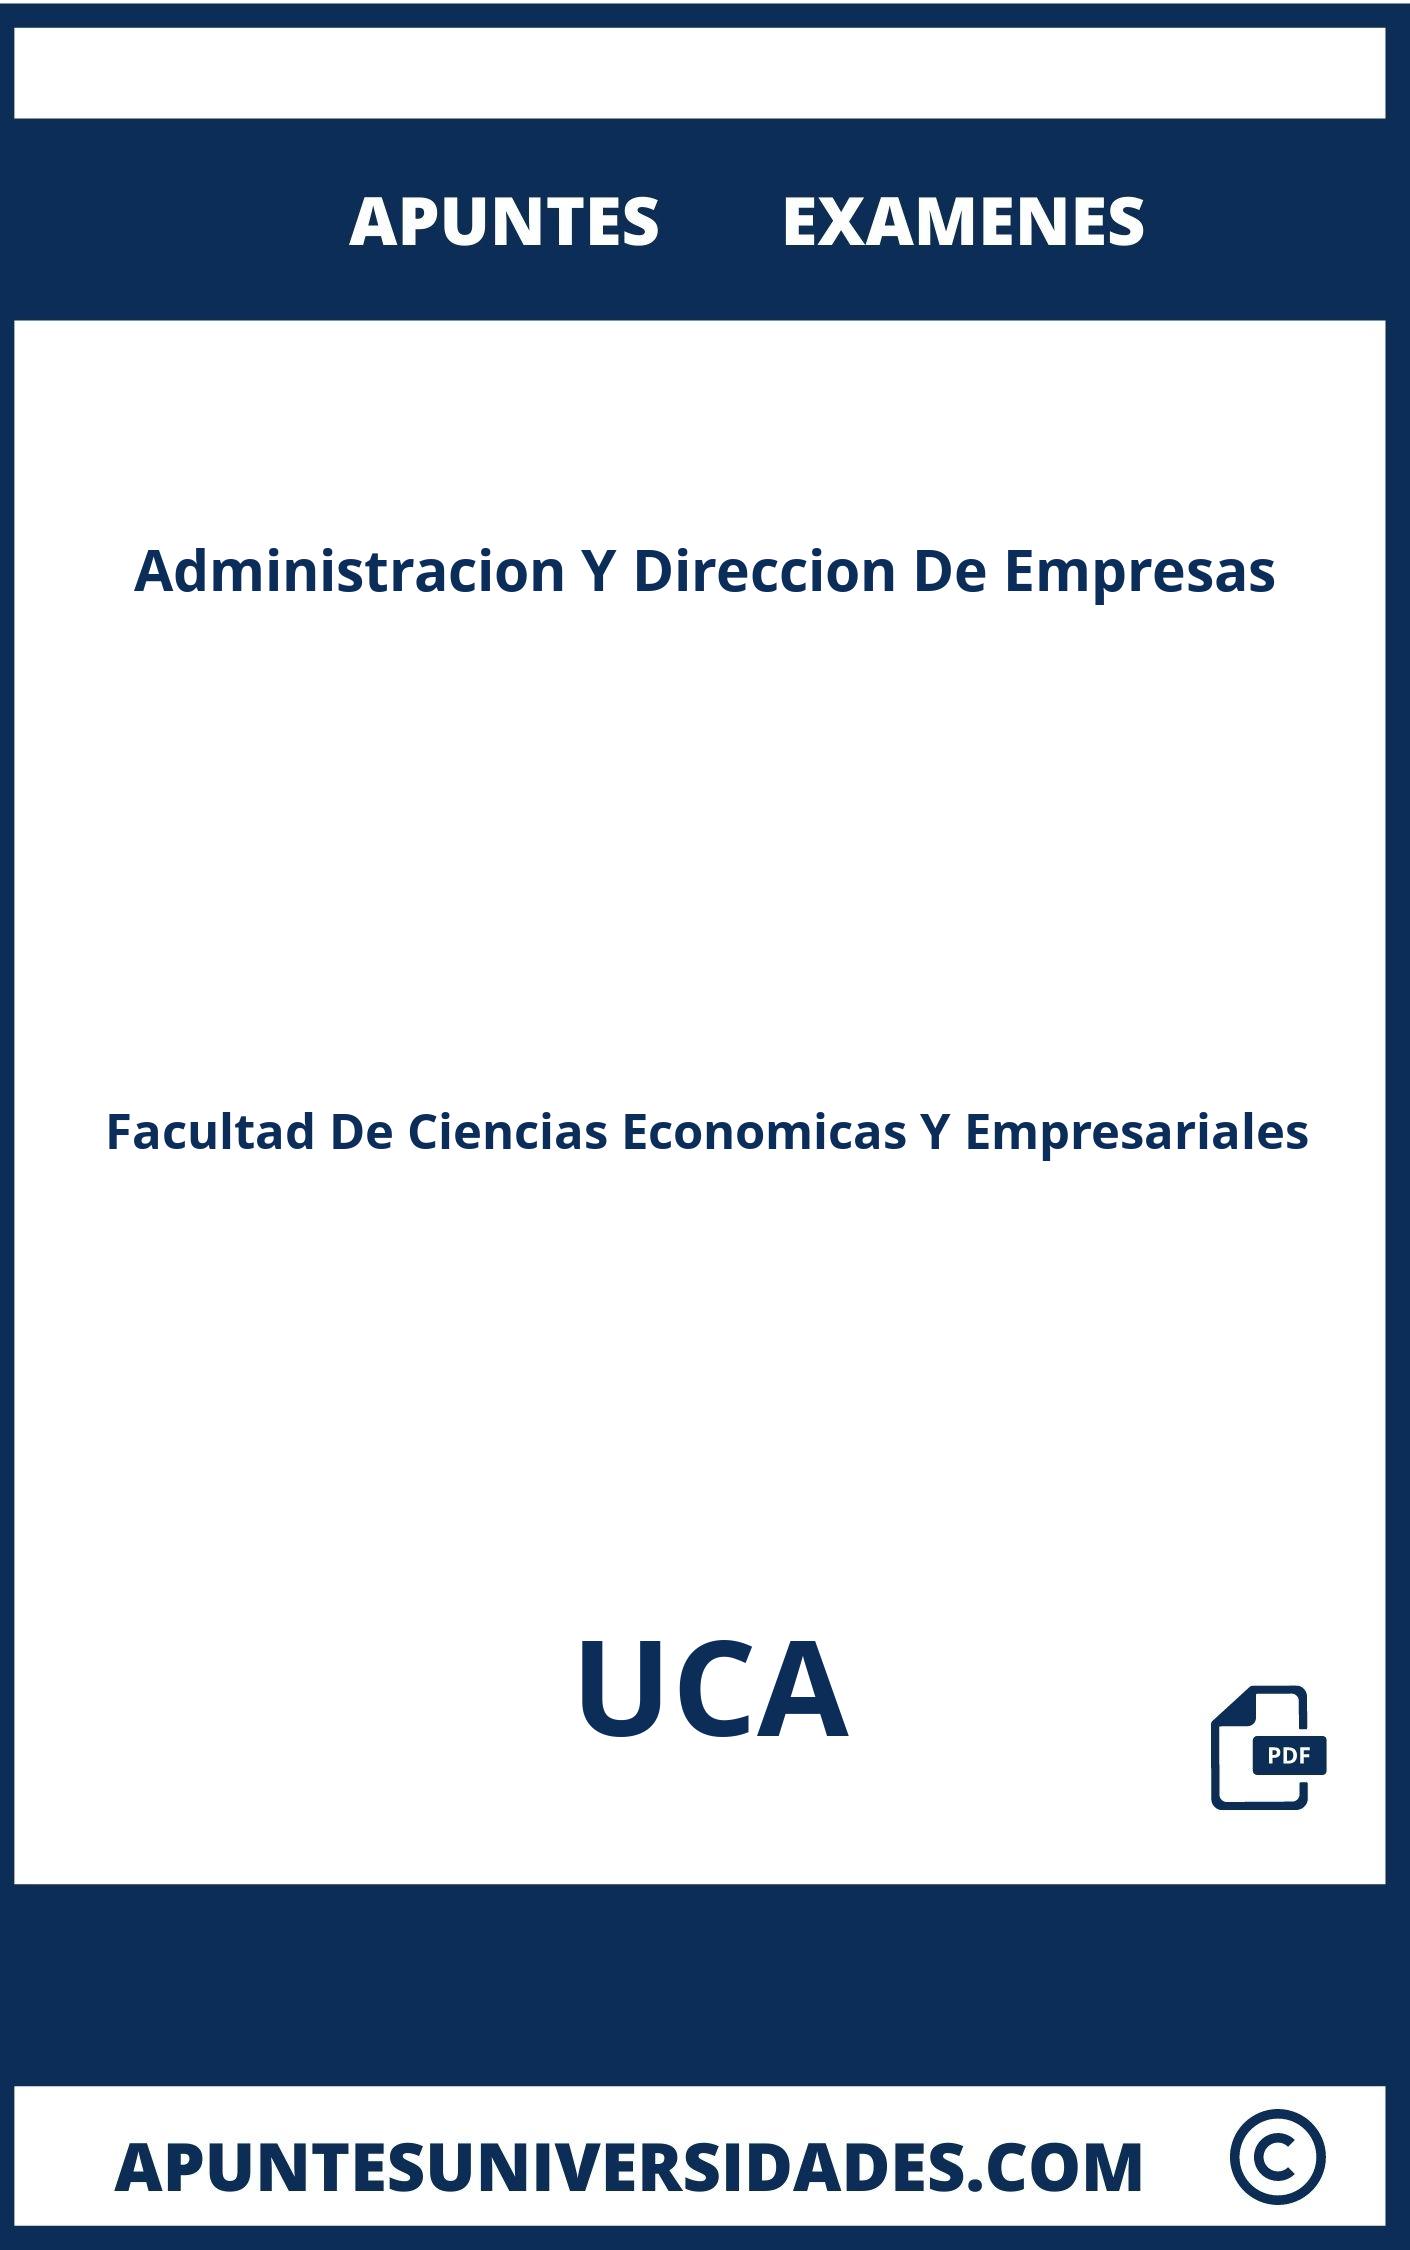 Apuntes y Examenes Administracion Y Direccion De Empresas UCA